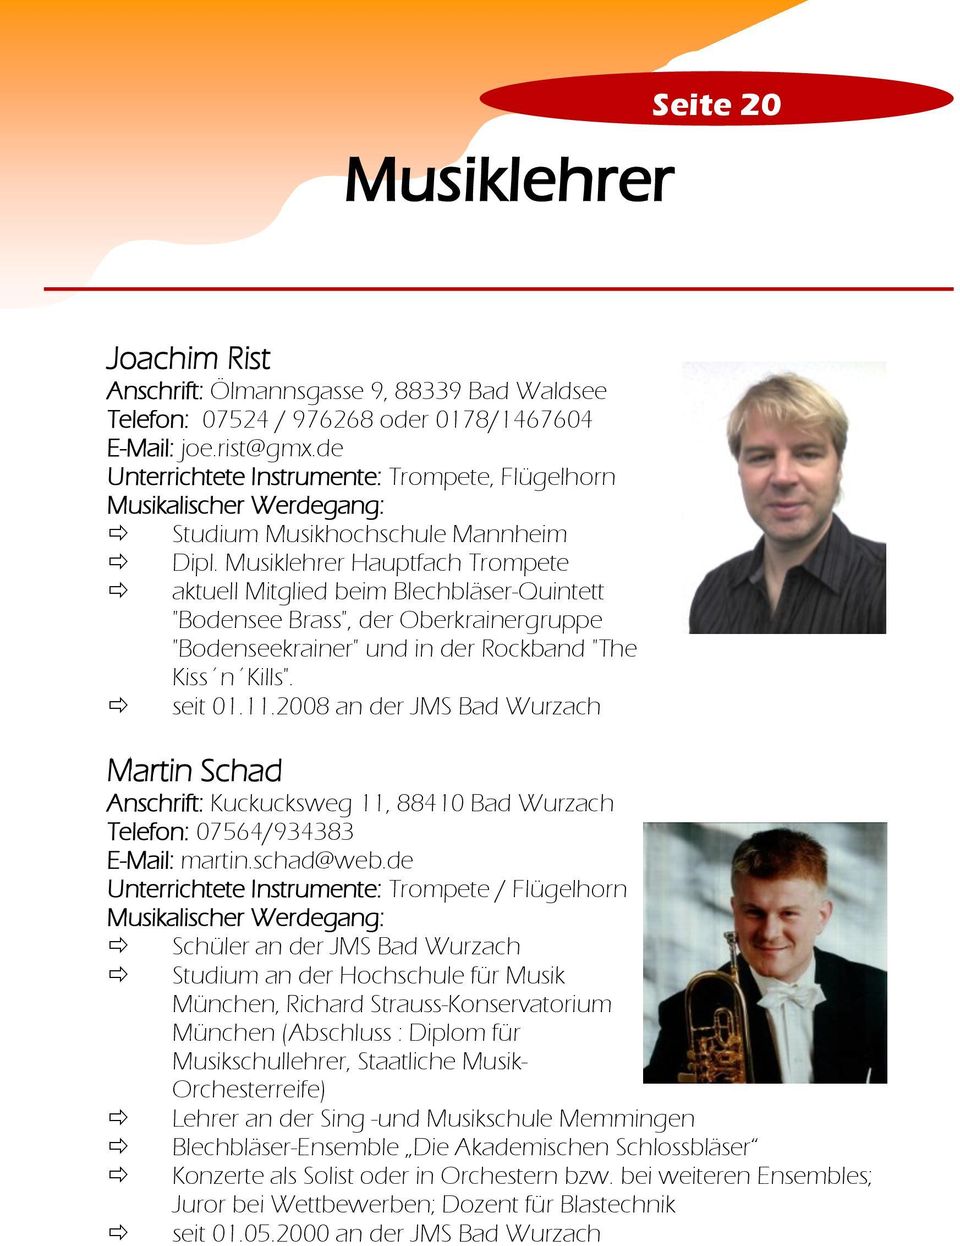 Musiklehrer Hauptfach Trompete aktuell Mitglied beim Blechbläser-Quintett "Bodensee Brass", der Oberkrainergruppe "Bodenseekrainer" und in der Rockband "The Kiss n Kills". seit 01.11.